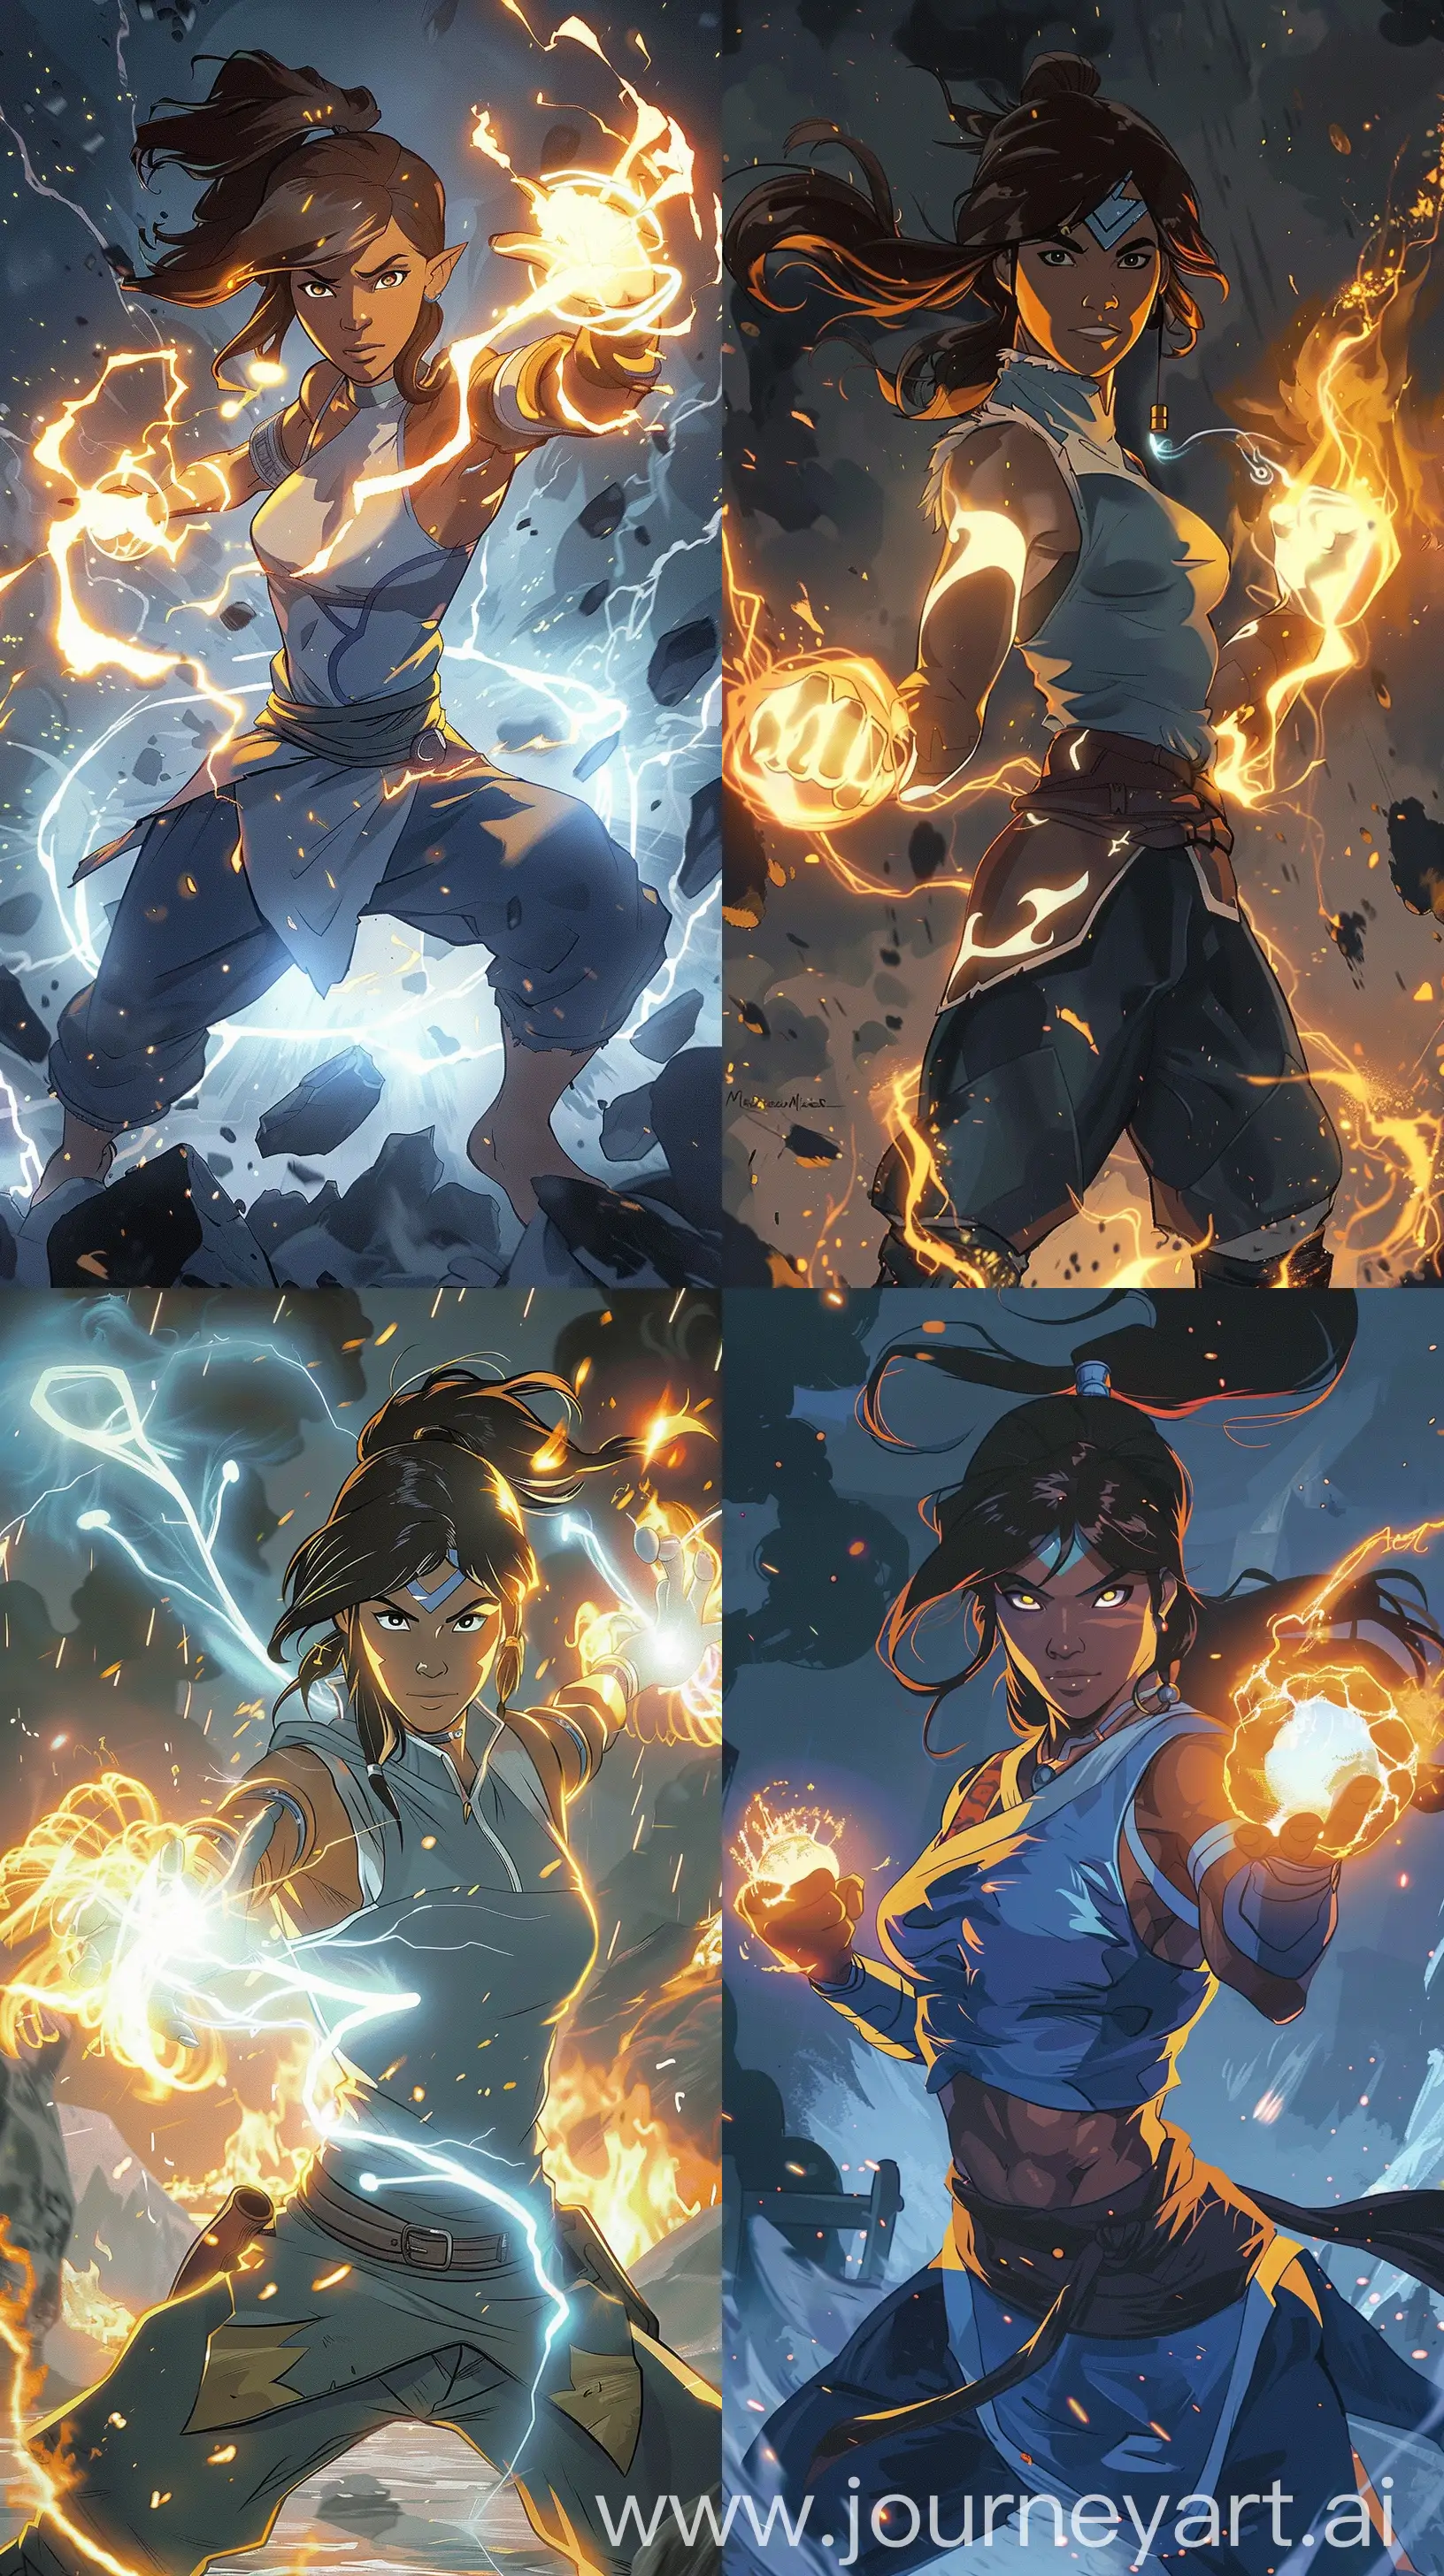 Korra-Avatar-Fan-Art-Dynamic-Pose-with-Glowing-Elemental-Powers